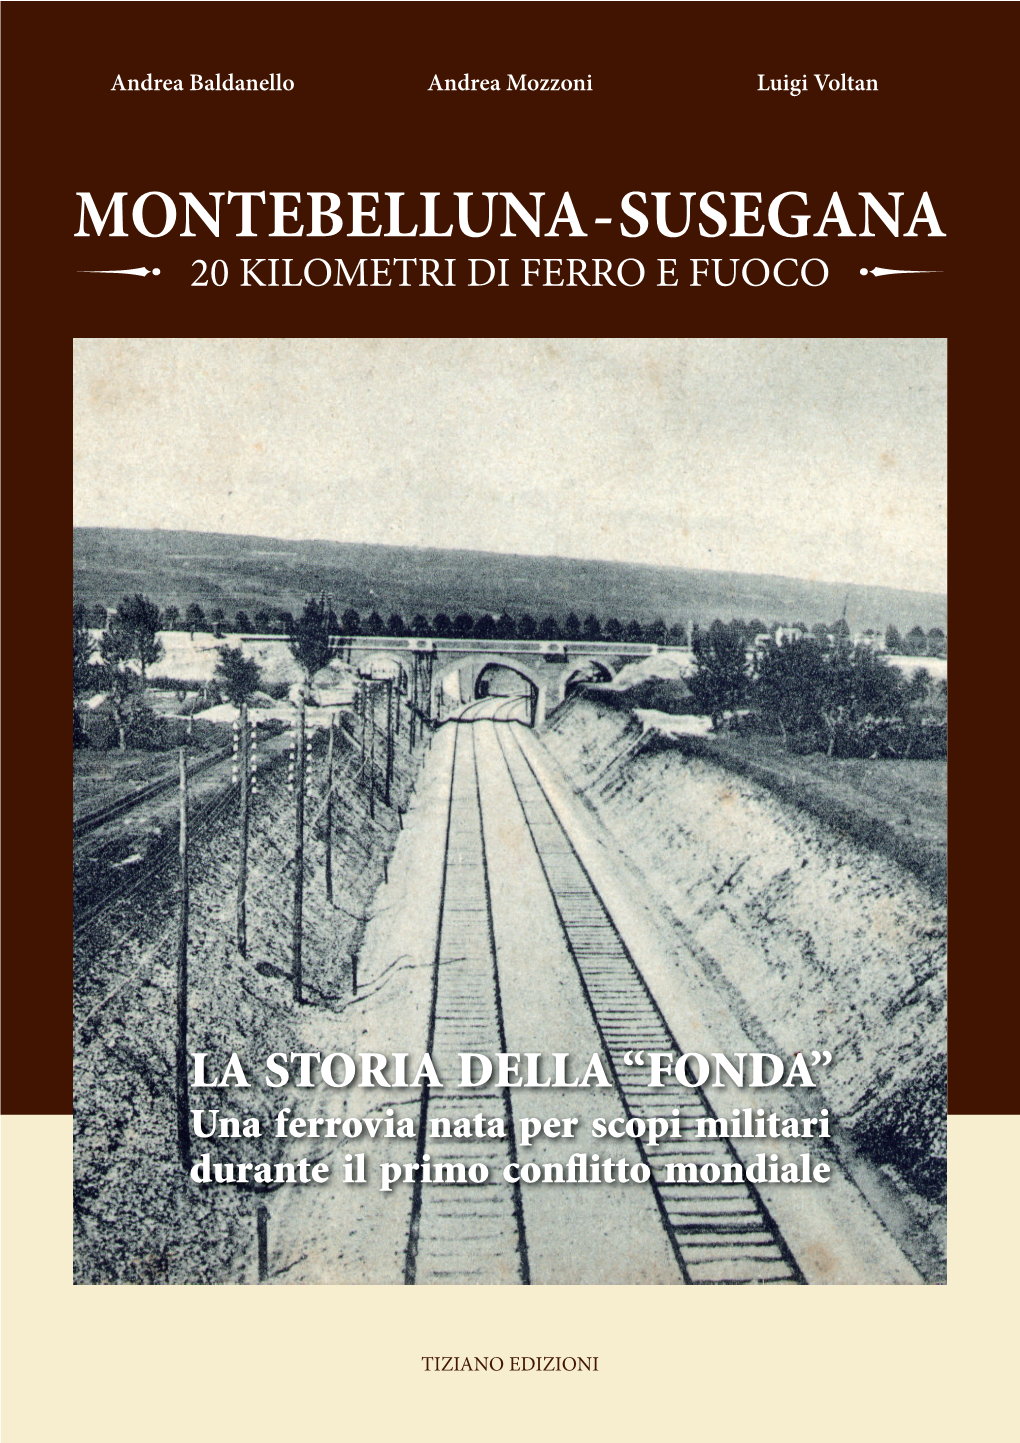 Montebelluna - Susegana 20 Kilometri Di Ferro E Fuoco